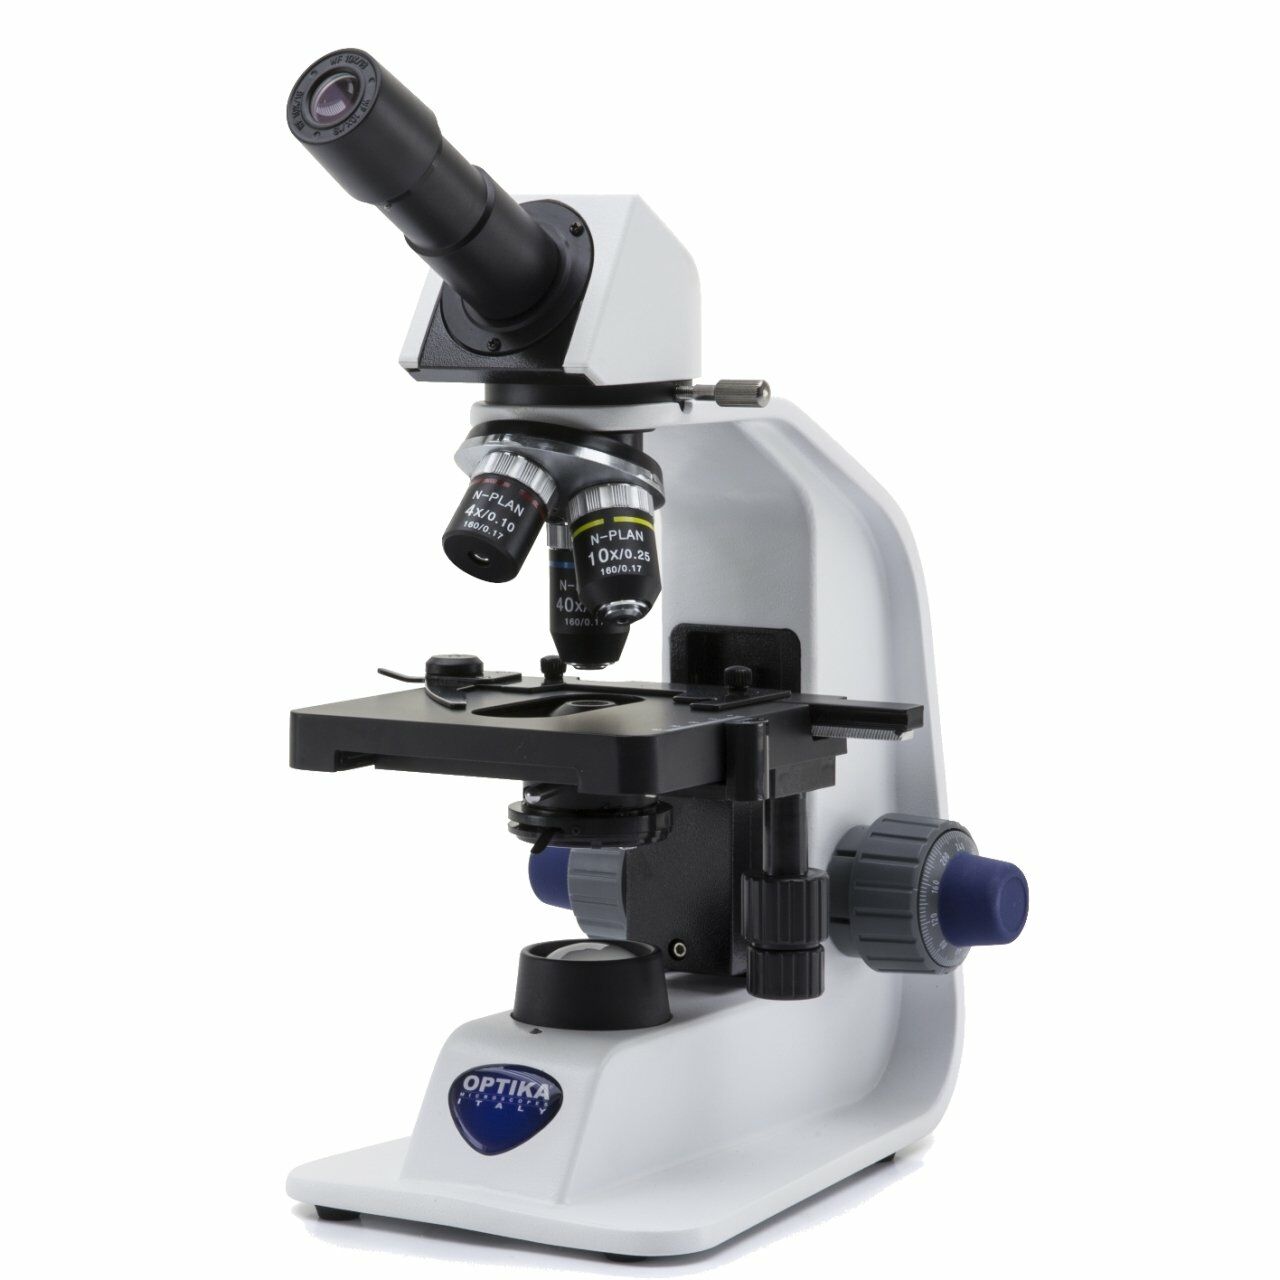 OPTIKA B-152R-PL | N-Plan 600 Büyütmeli Sarjedilebilir Bataryalı Monoküler Laboratuar Mikroskobu